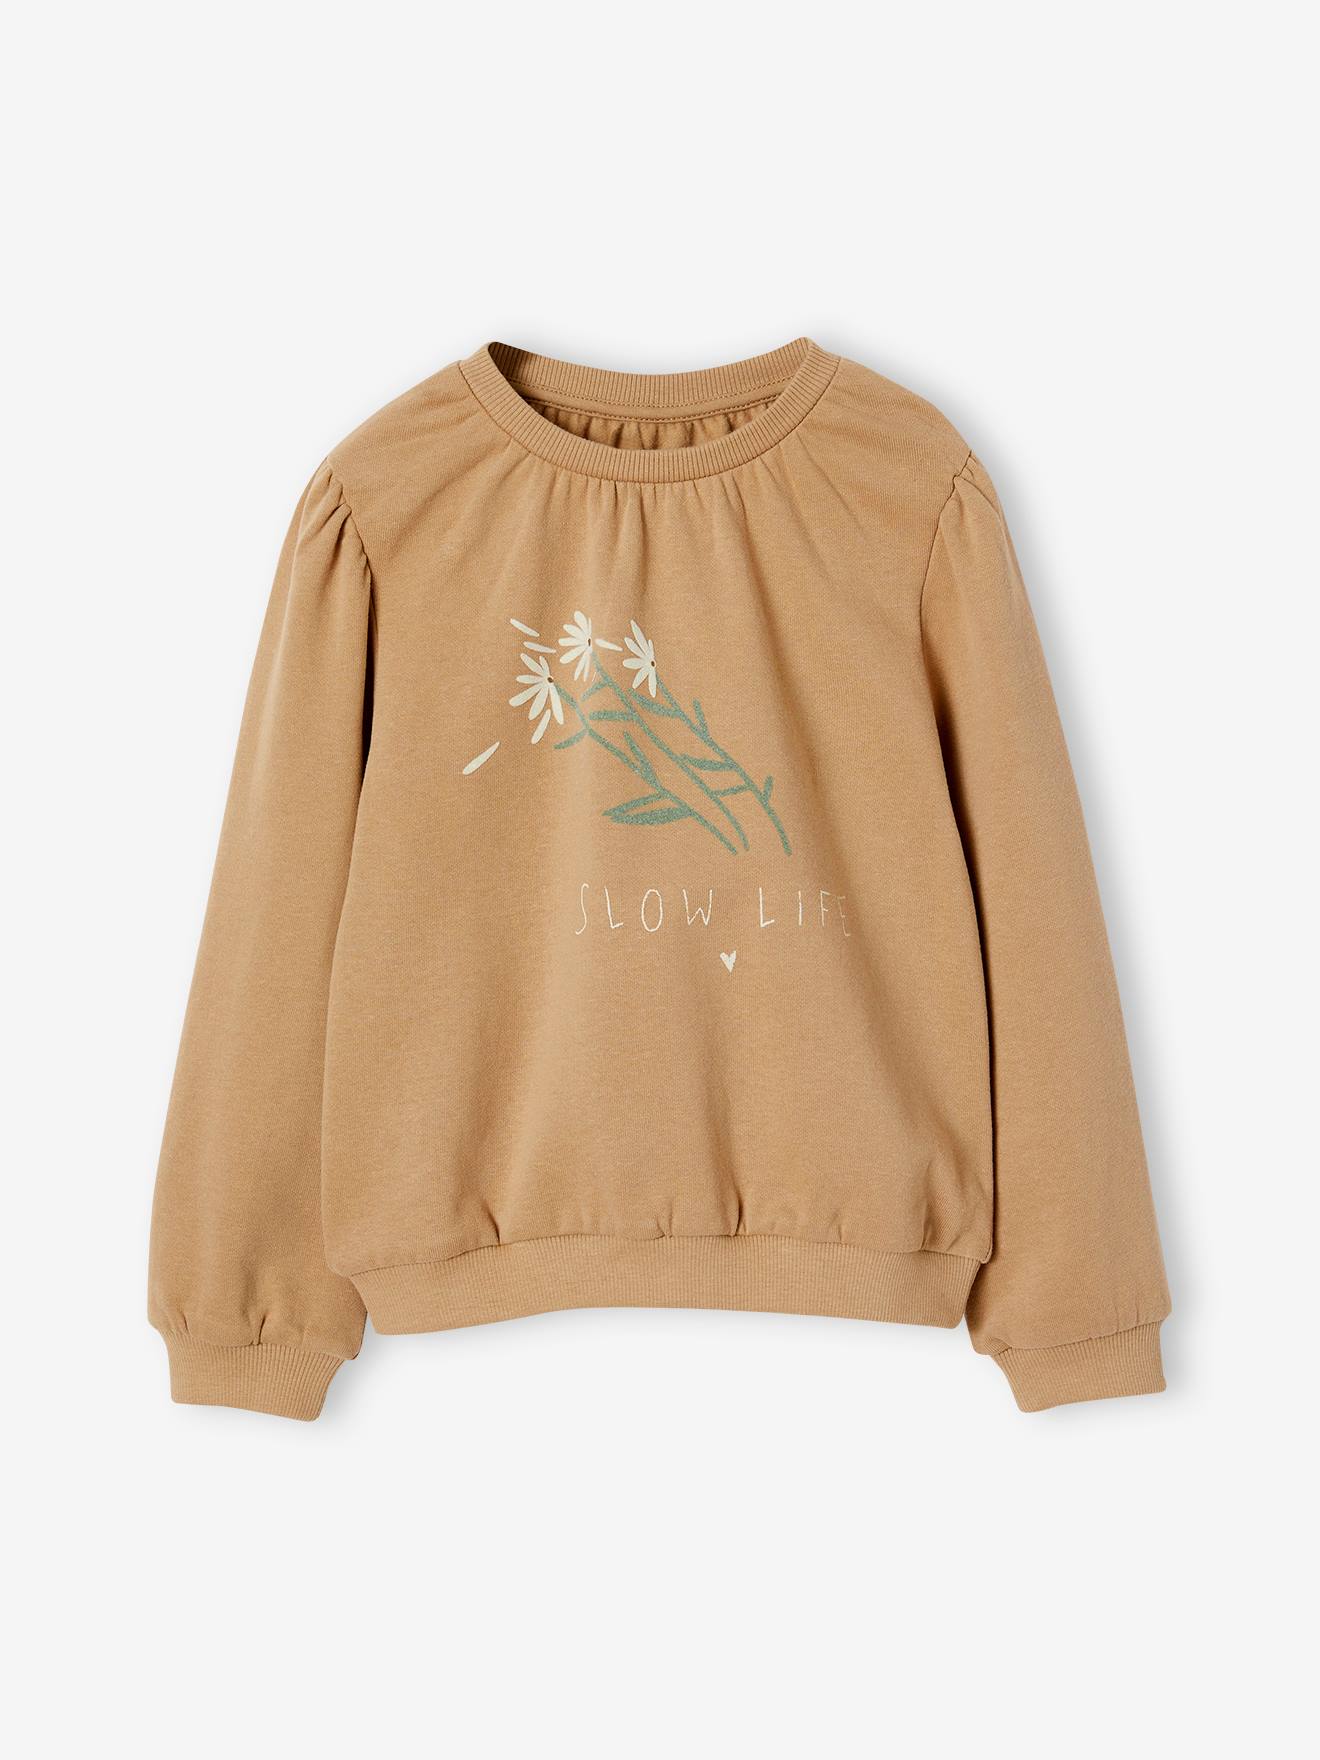 Romantisch sweatshirt met bloemmotief en flatlockdetails